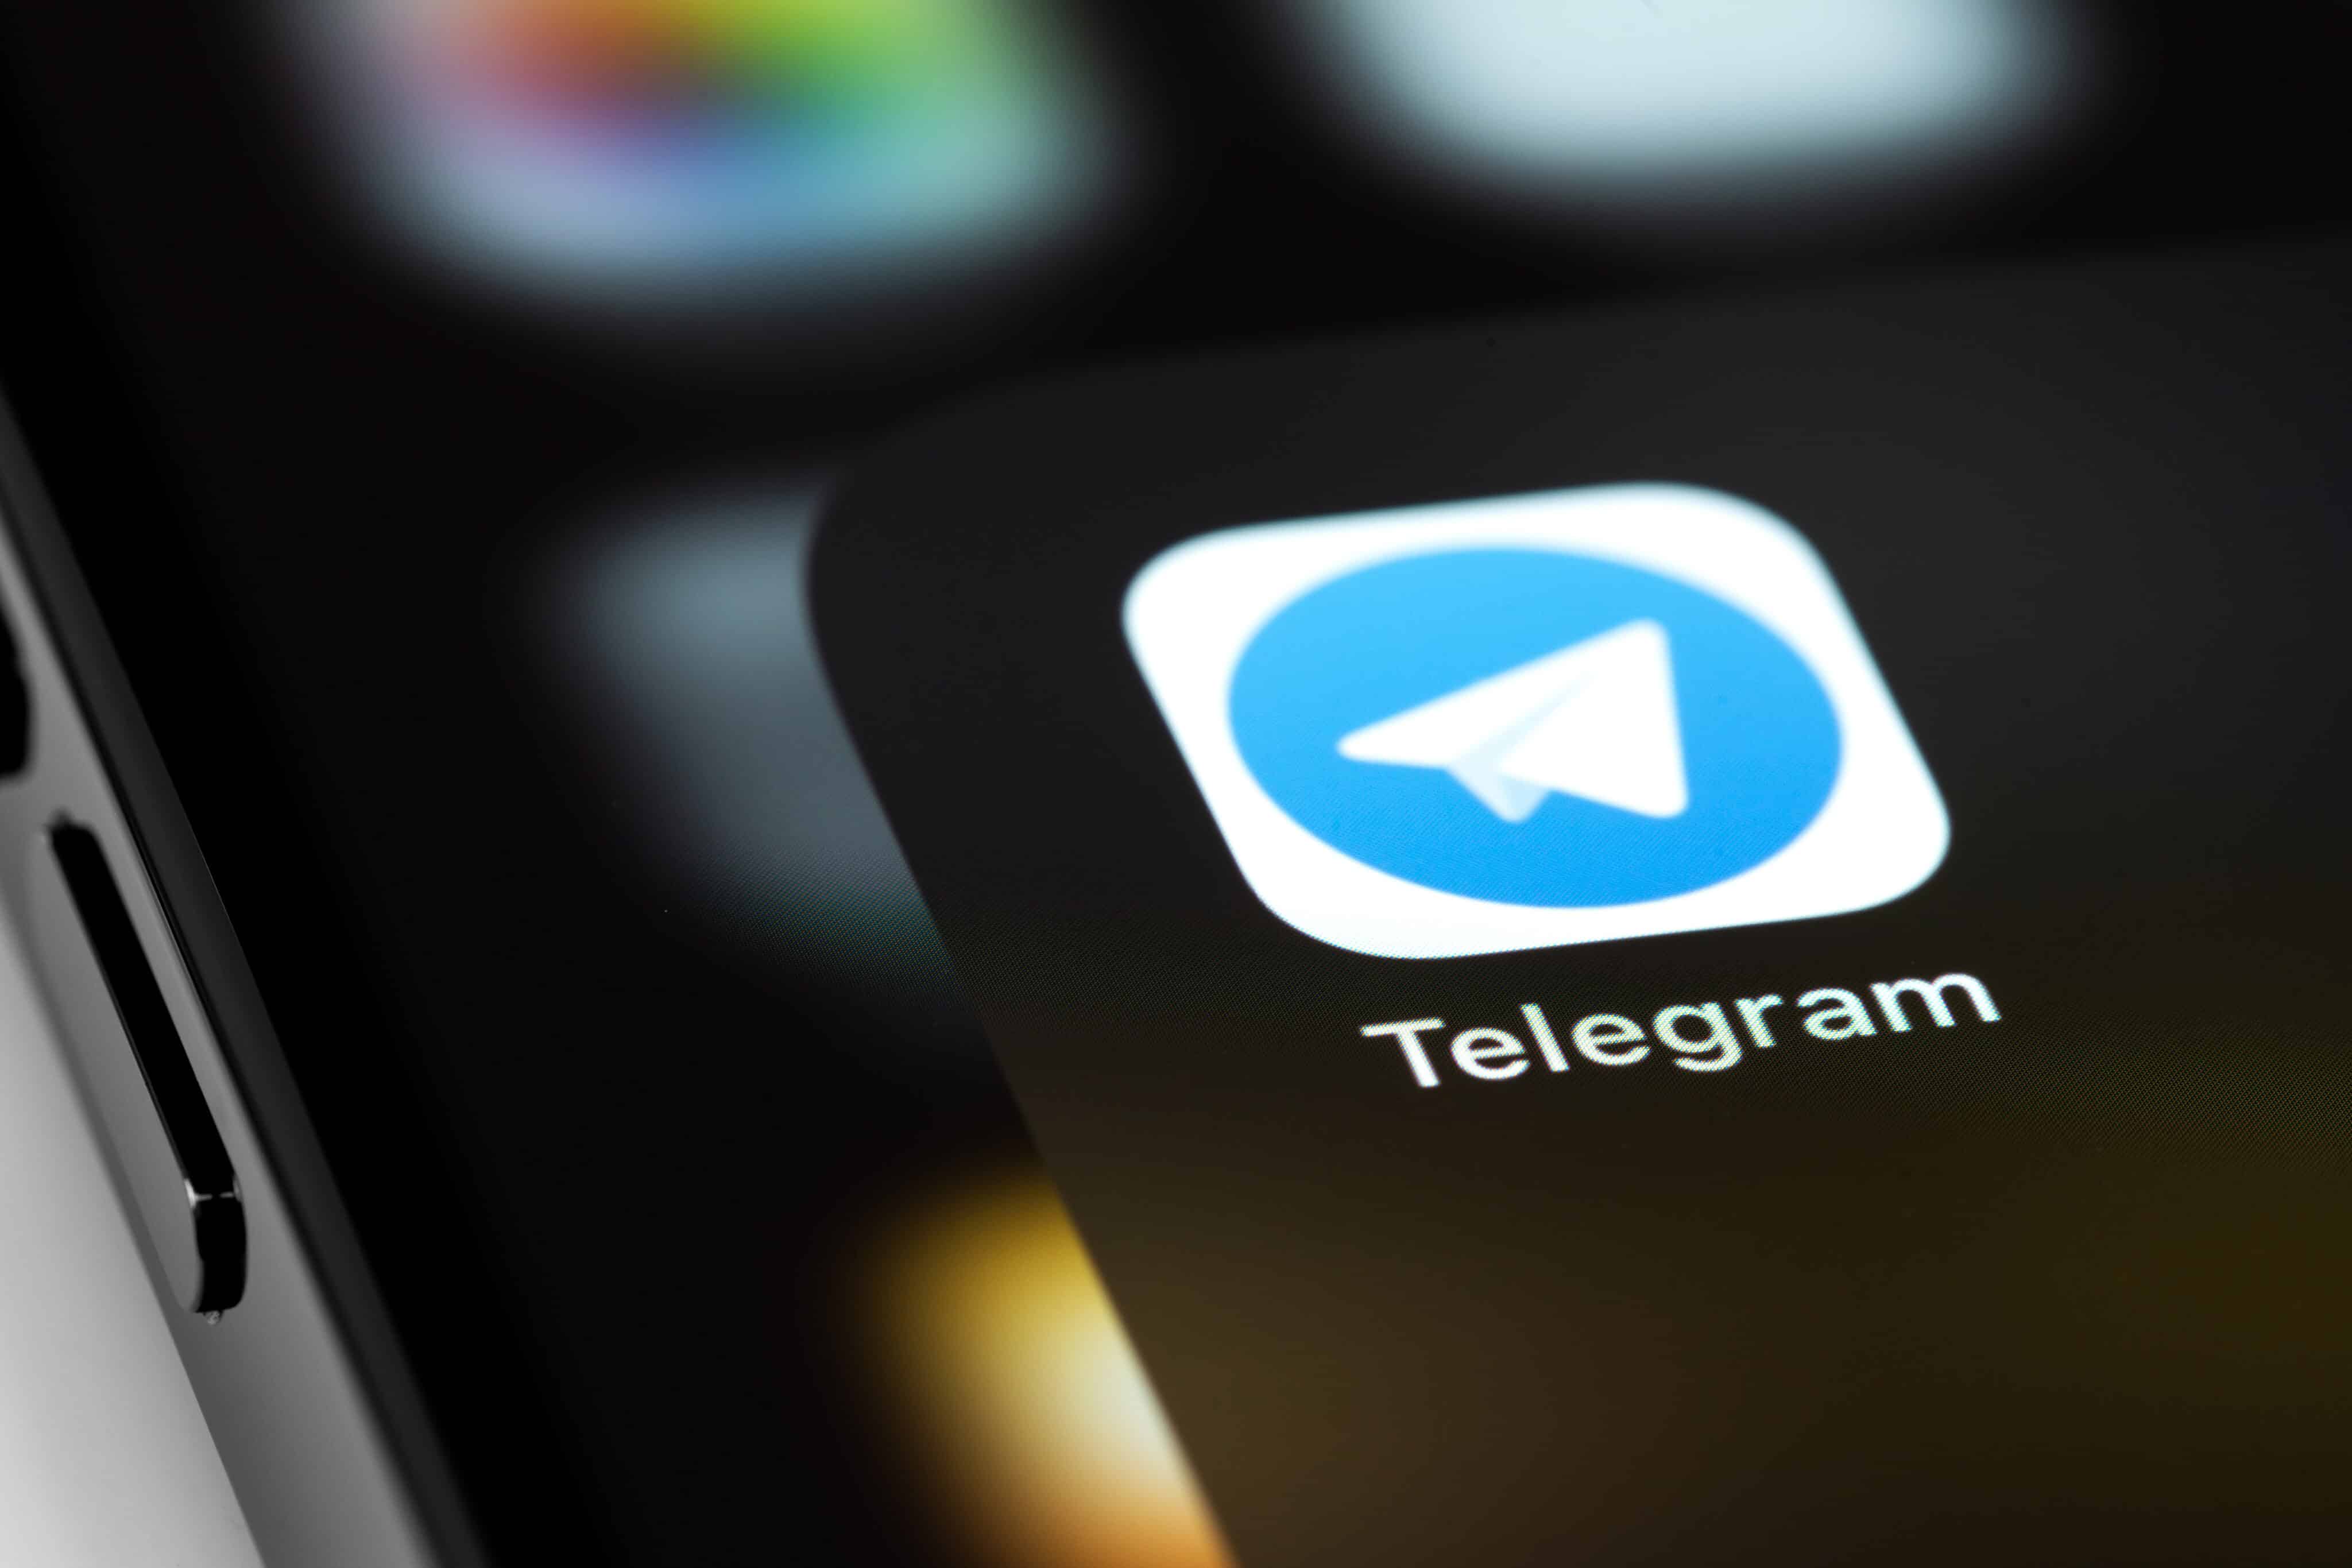 Como Assistir Séries Grátis pelo Telegram - Aplicativos Grátis